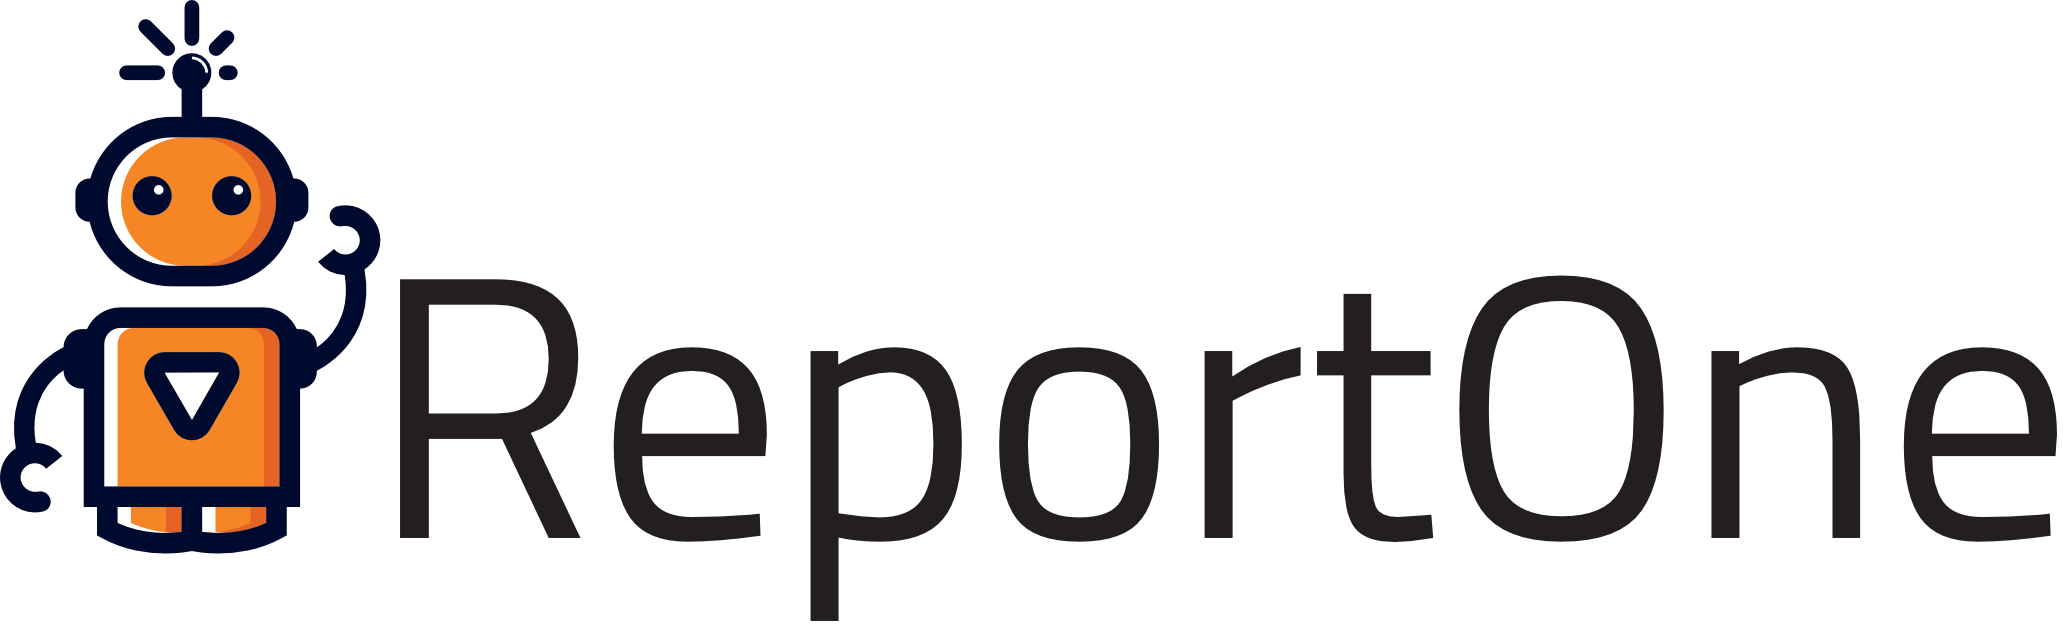 ReportOne - App e Programma per gestire gli interventi tecnici e i rapportini digitali sul campo